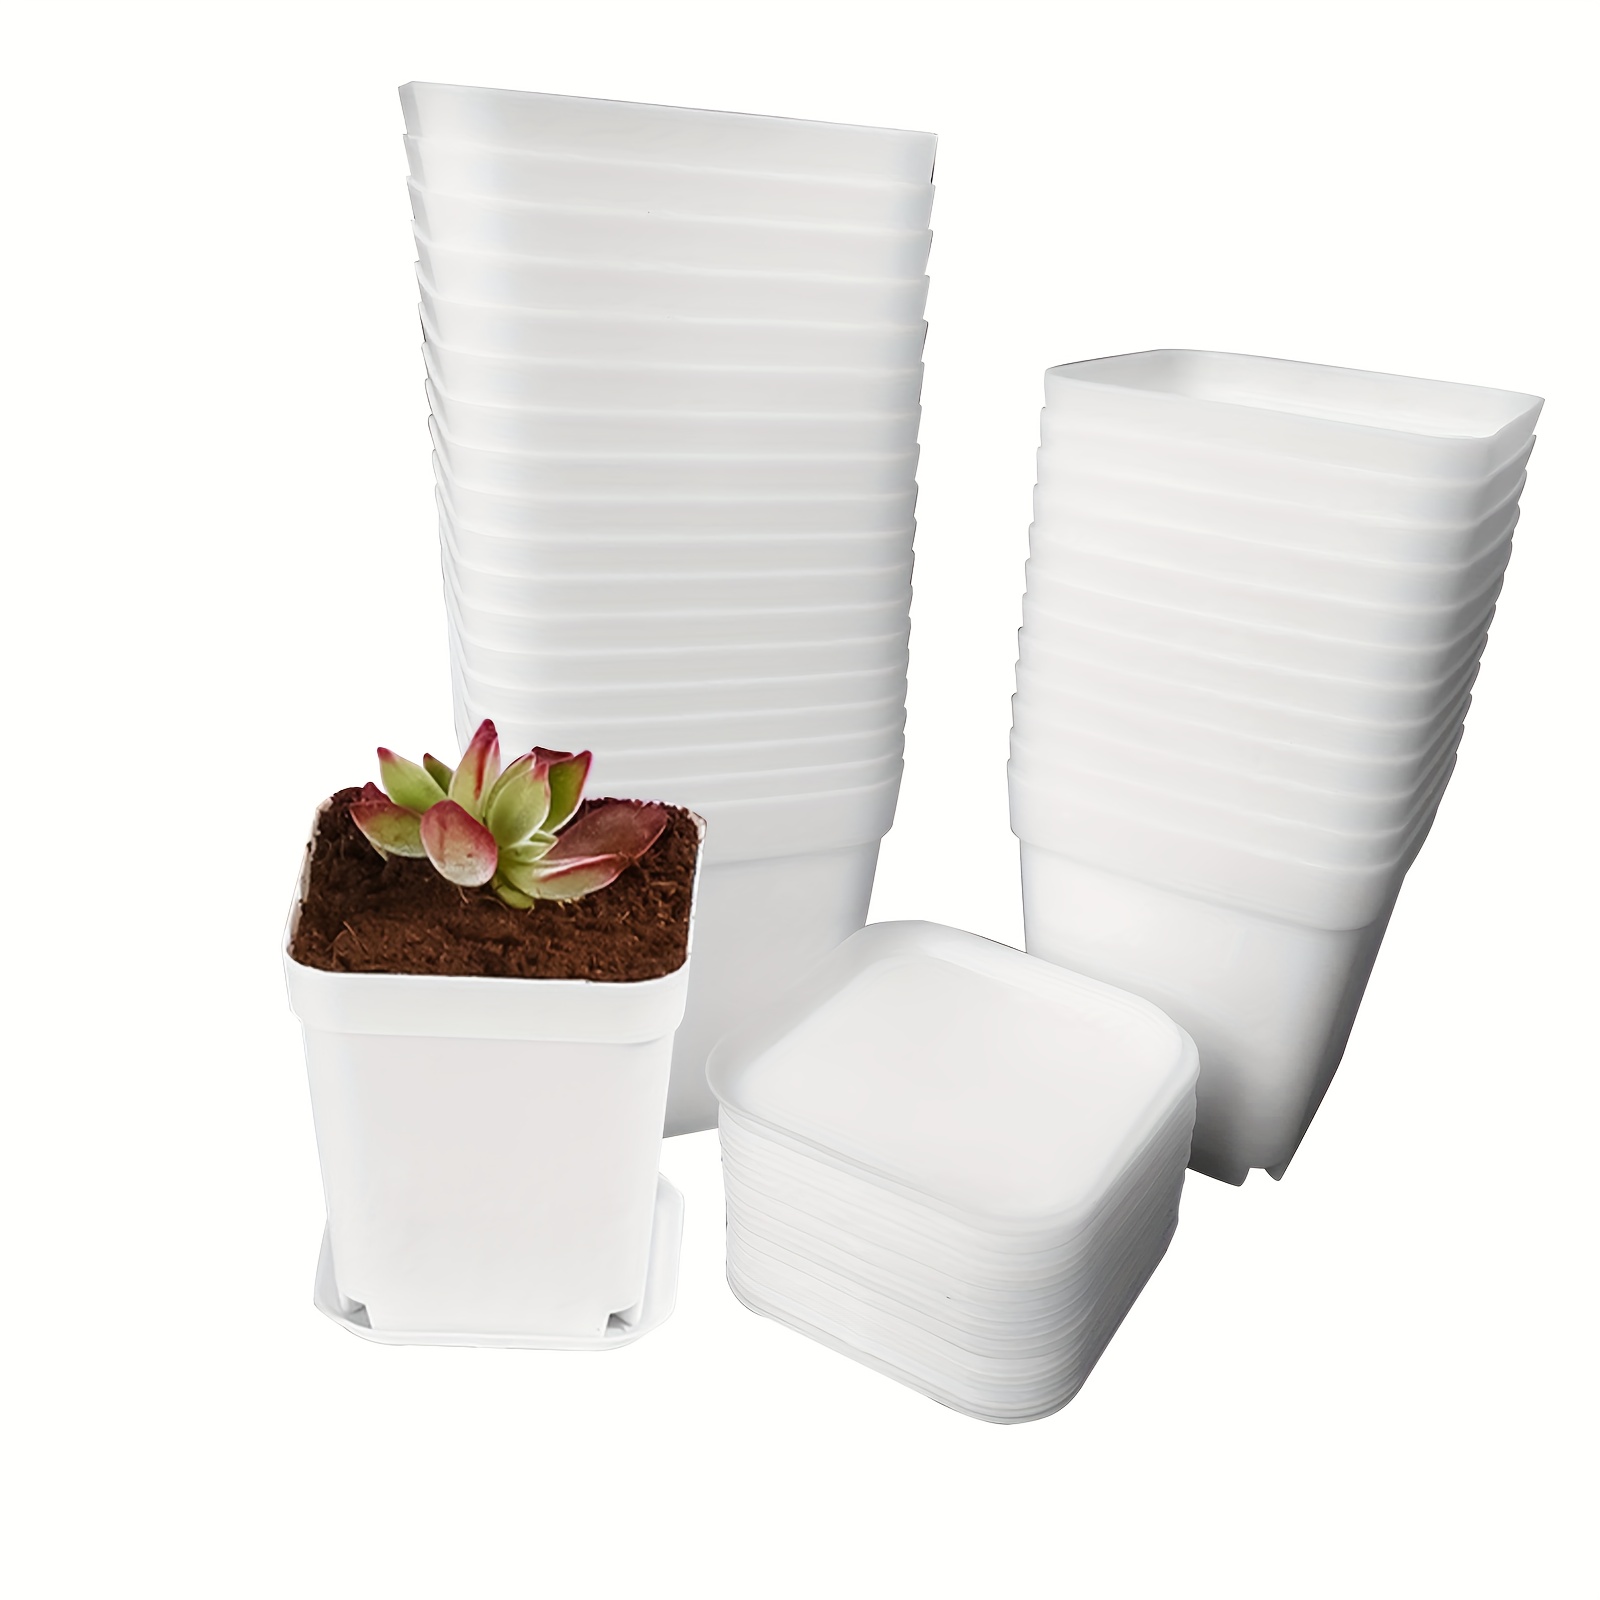 square ceramic flower pots